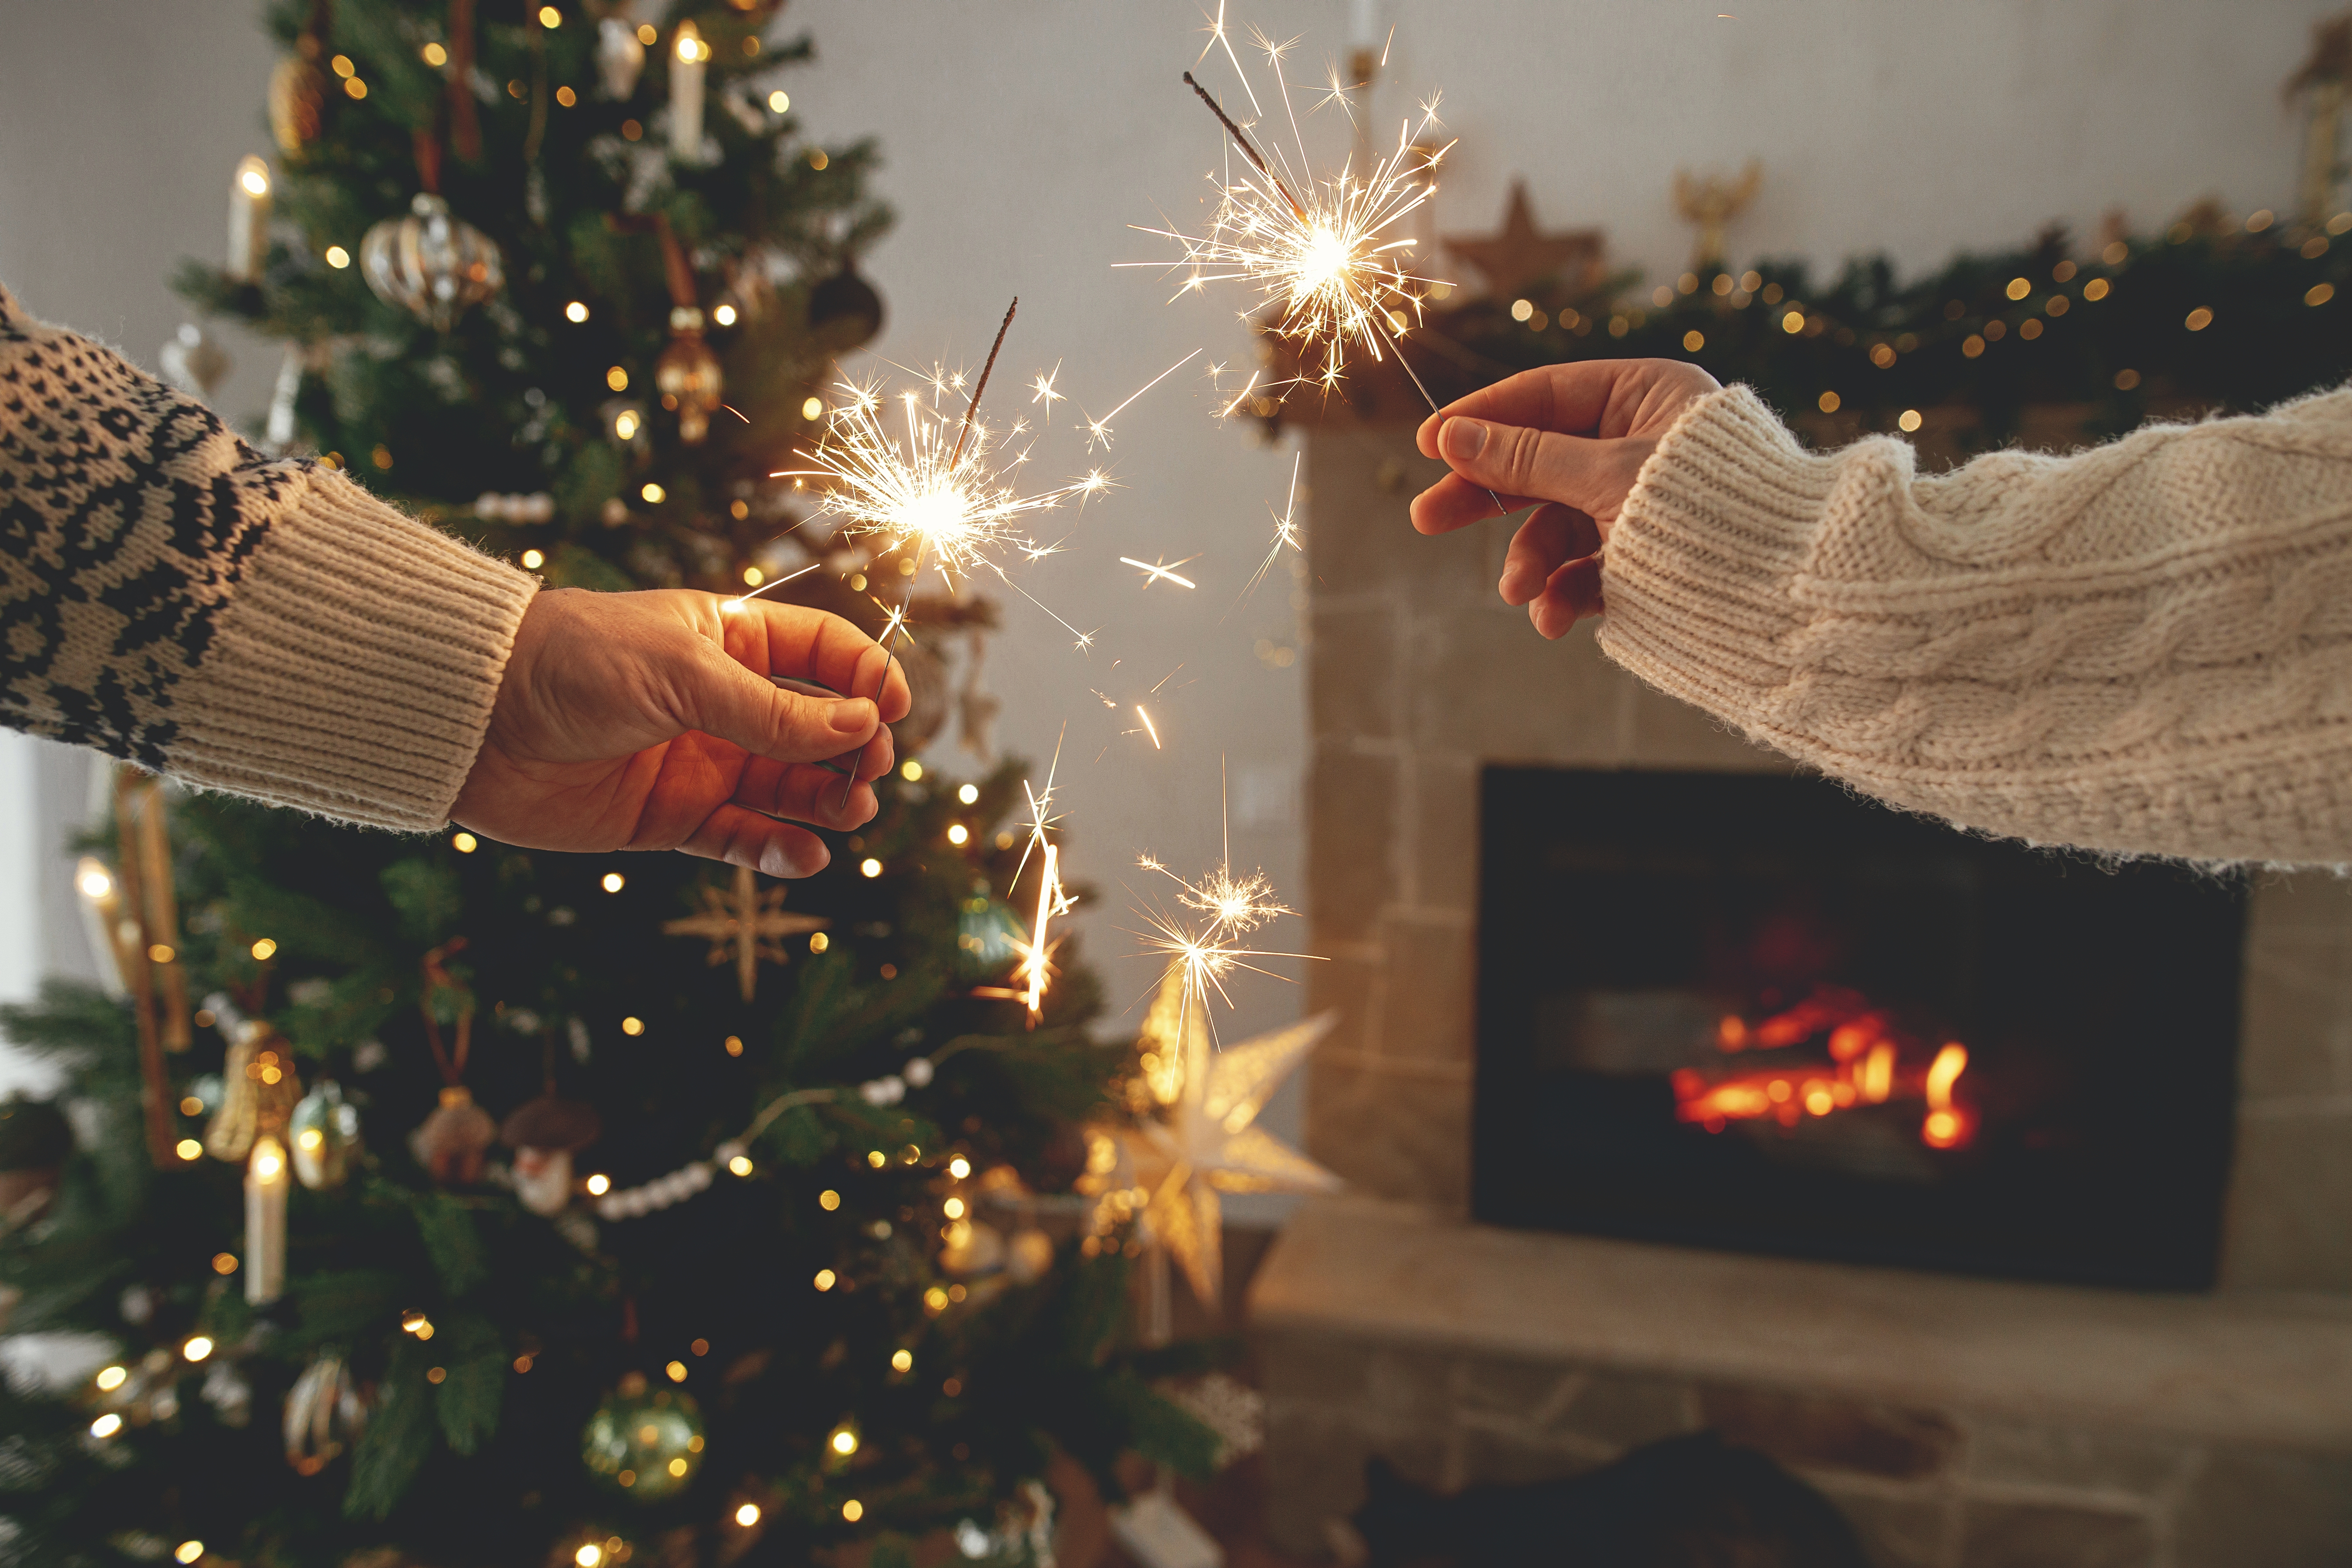 Zwei Menschen zünden Wunderkerzen in der Nähe eines Weihnachtsbaums an | Quelle: Shutterstock